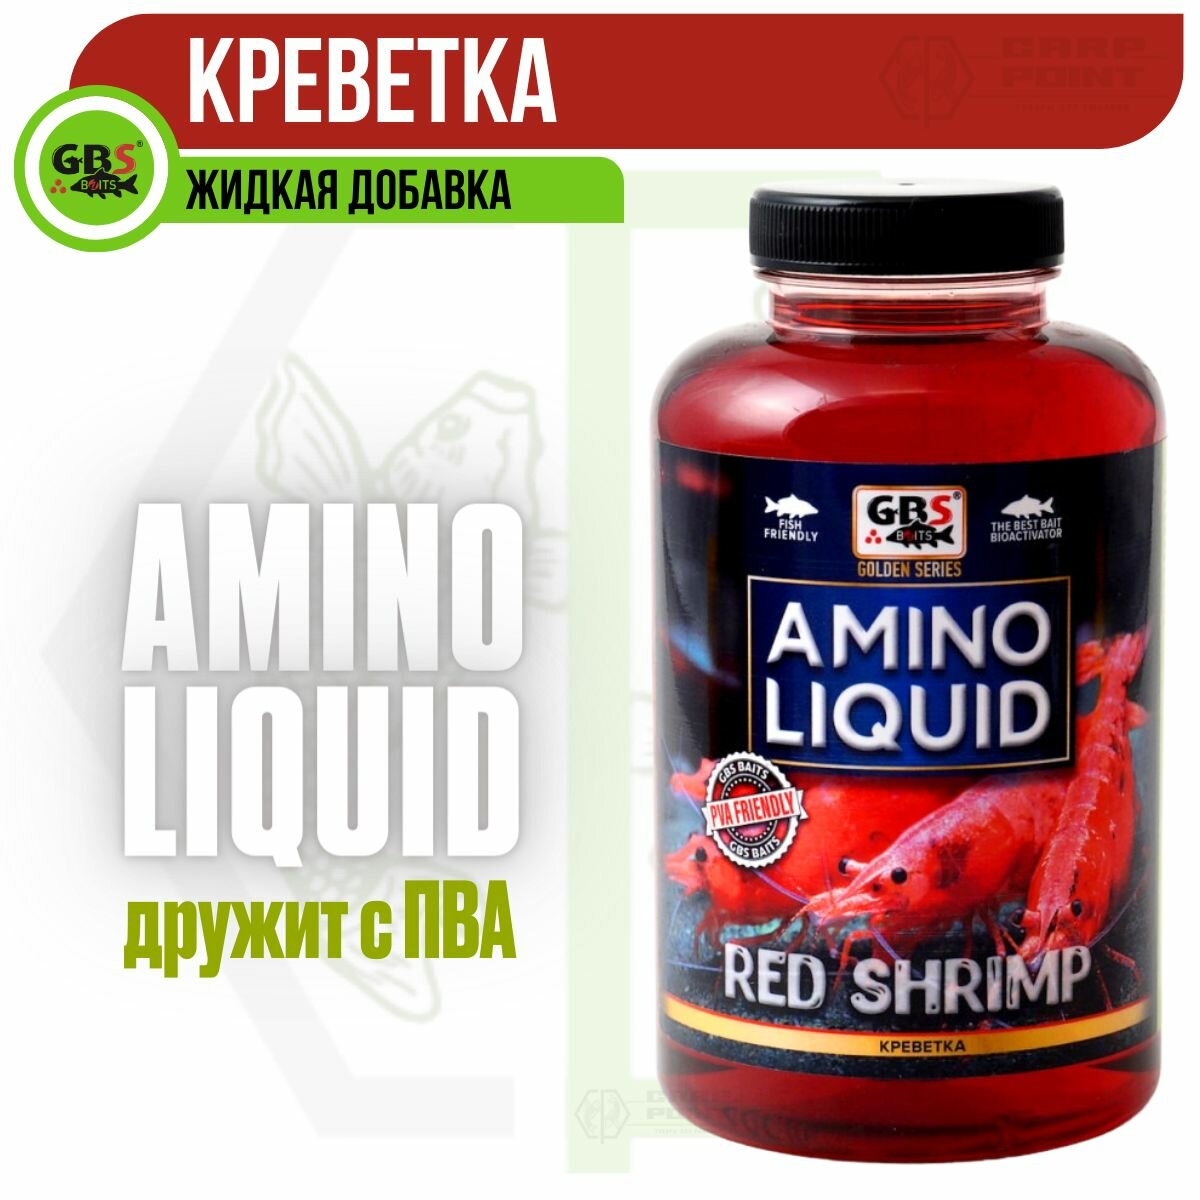 Амино ликвид GBS Amino Liquid RED SHRIMP Креветка 0,5л (бутылка)